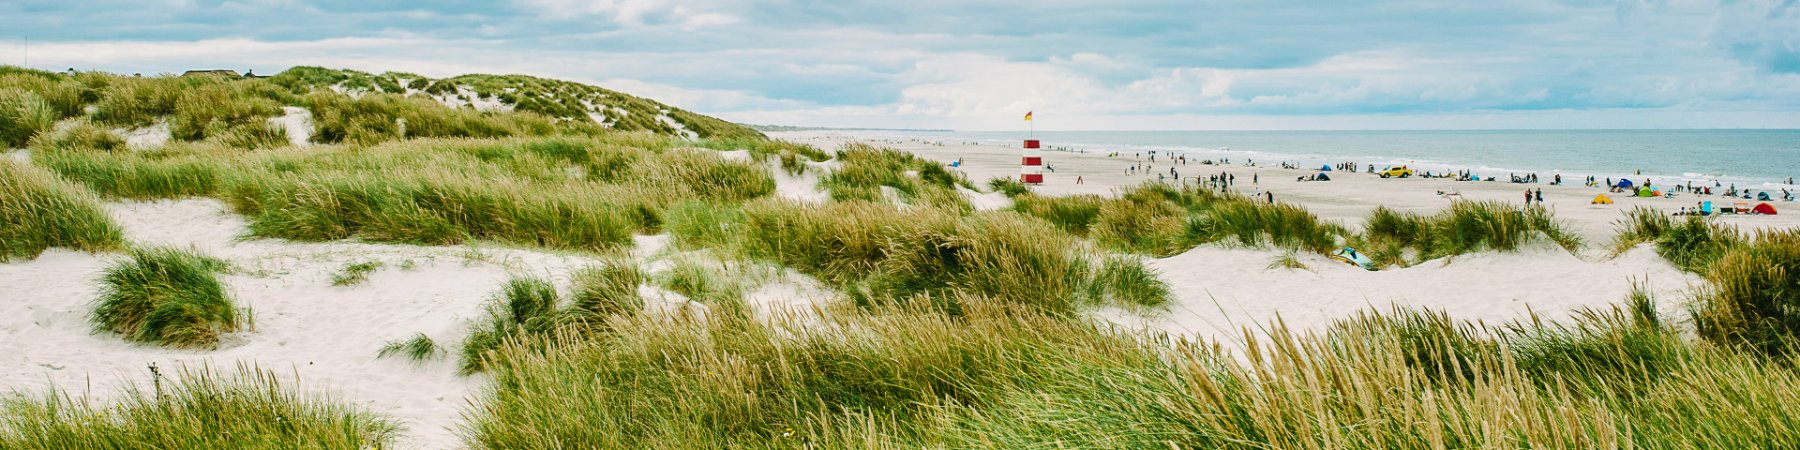 Ferienhaus Henne Strand – Top-Unterkünfte in Dänemark